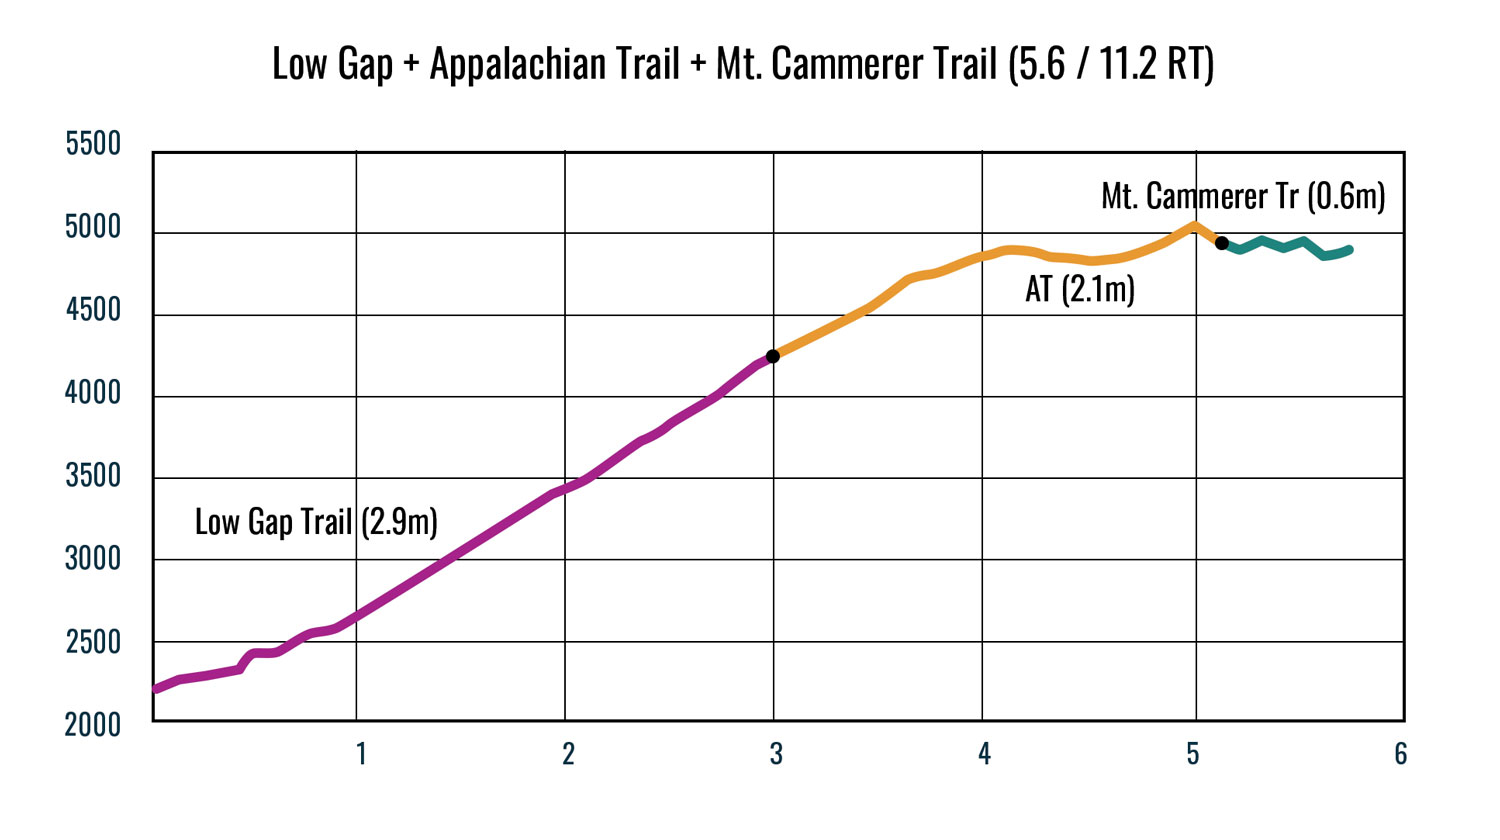 Mt. Cammerer Trail via Low Gap + AT Elevation Profile